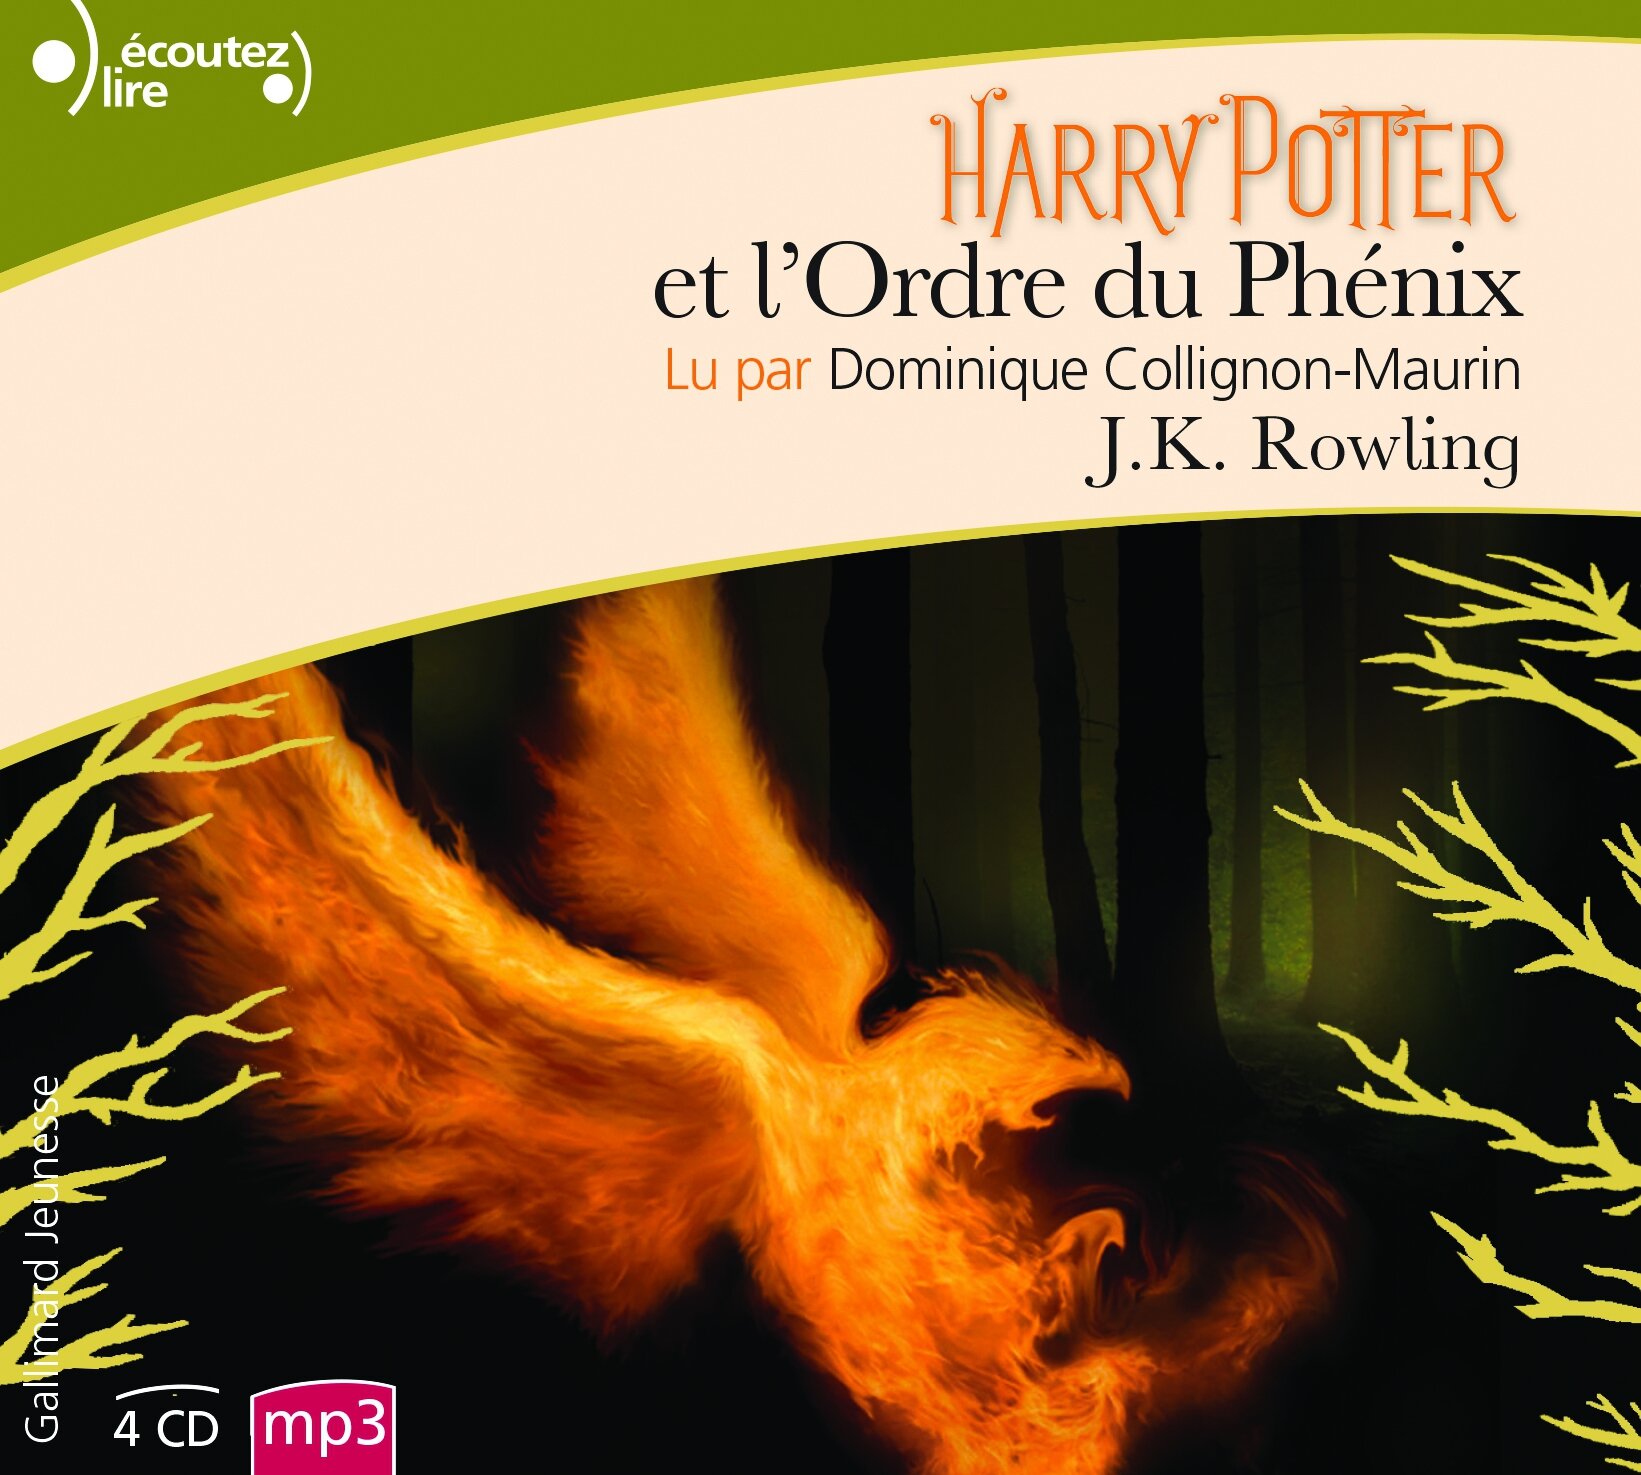 Harry Potter et la Coupe de Feu: Rowling, J.K., Kay, Jim, Ménard